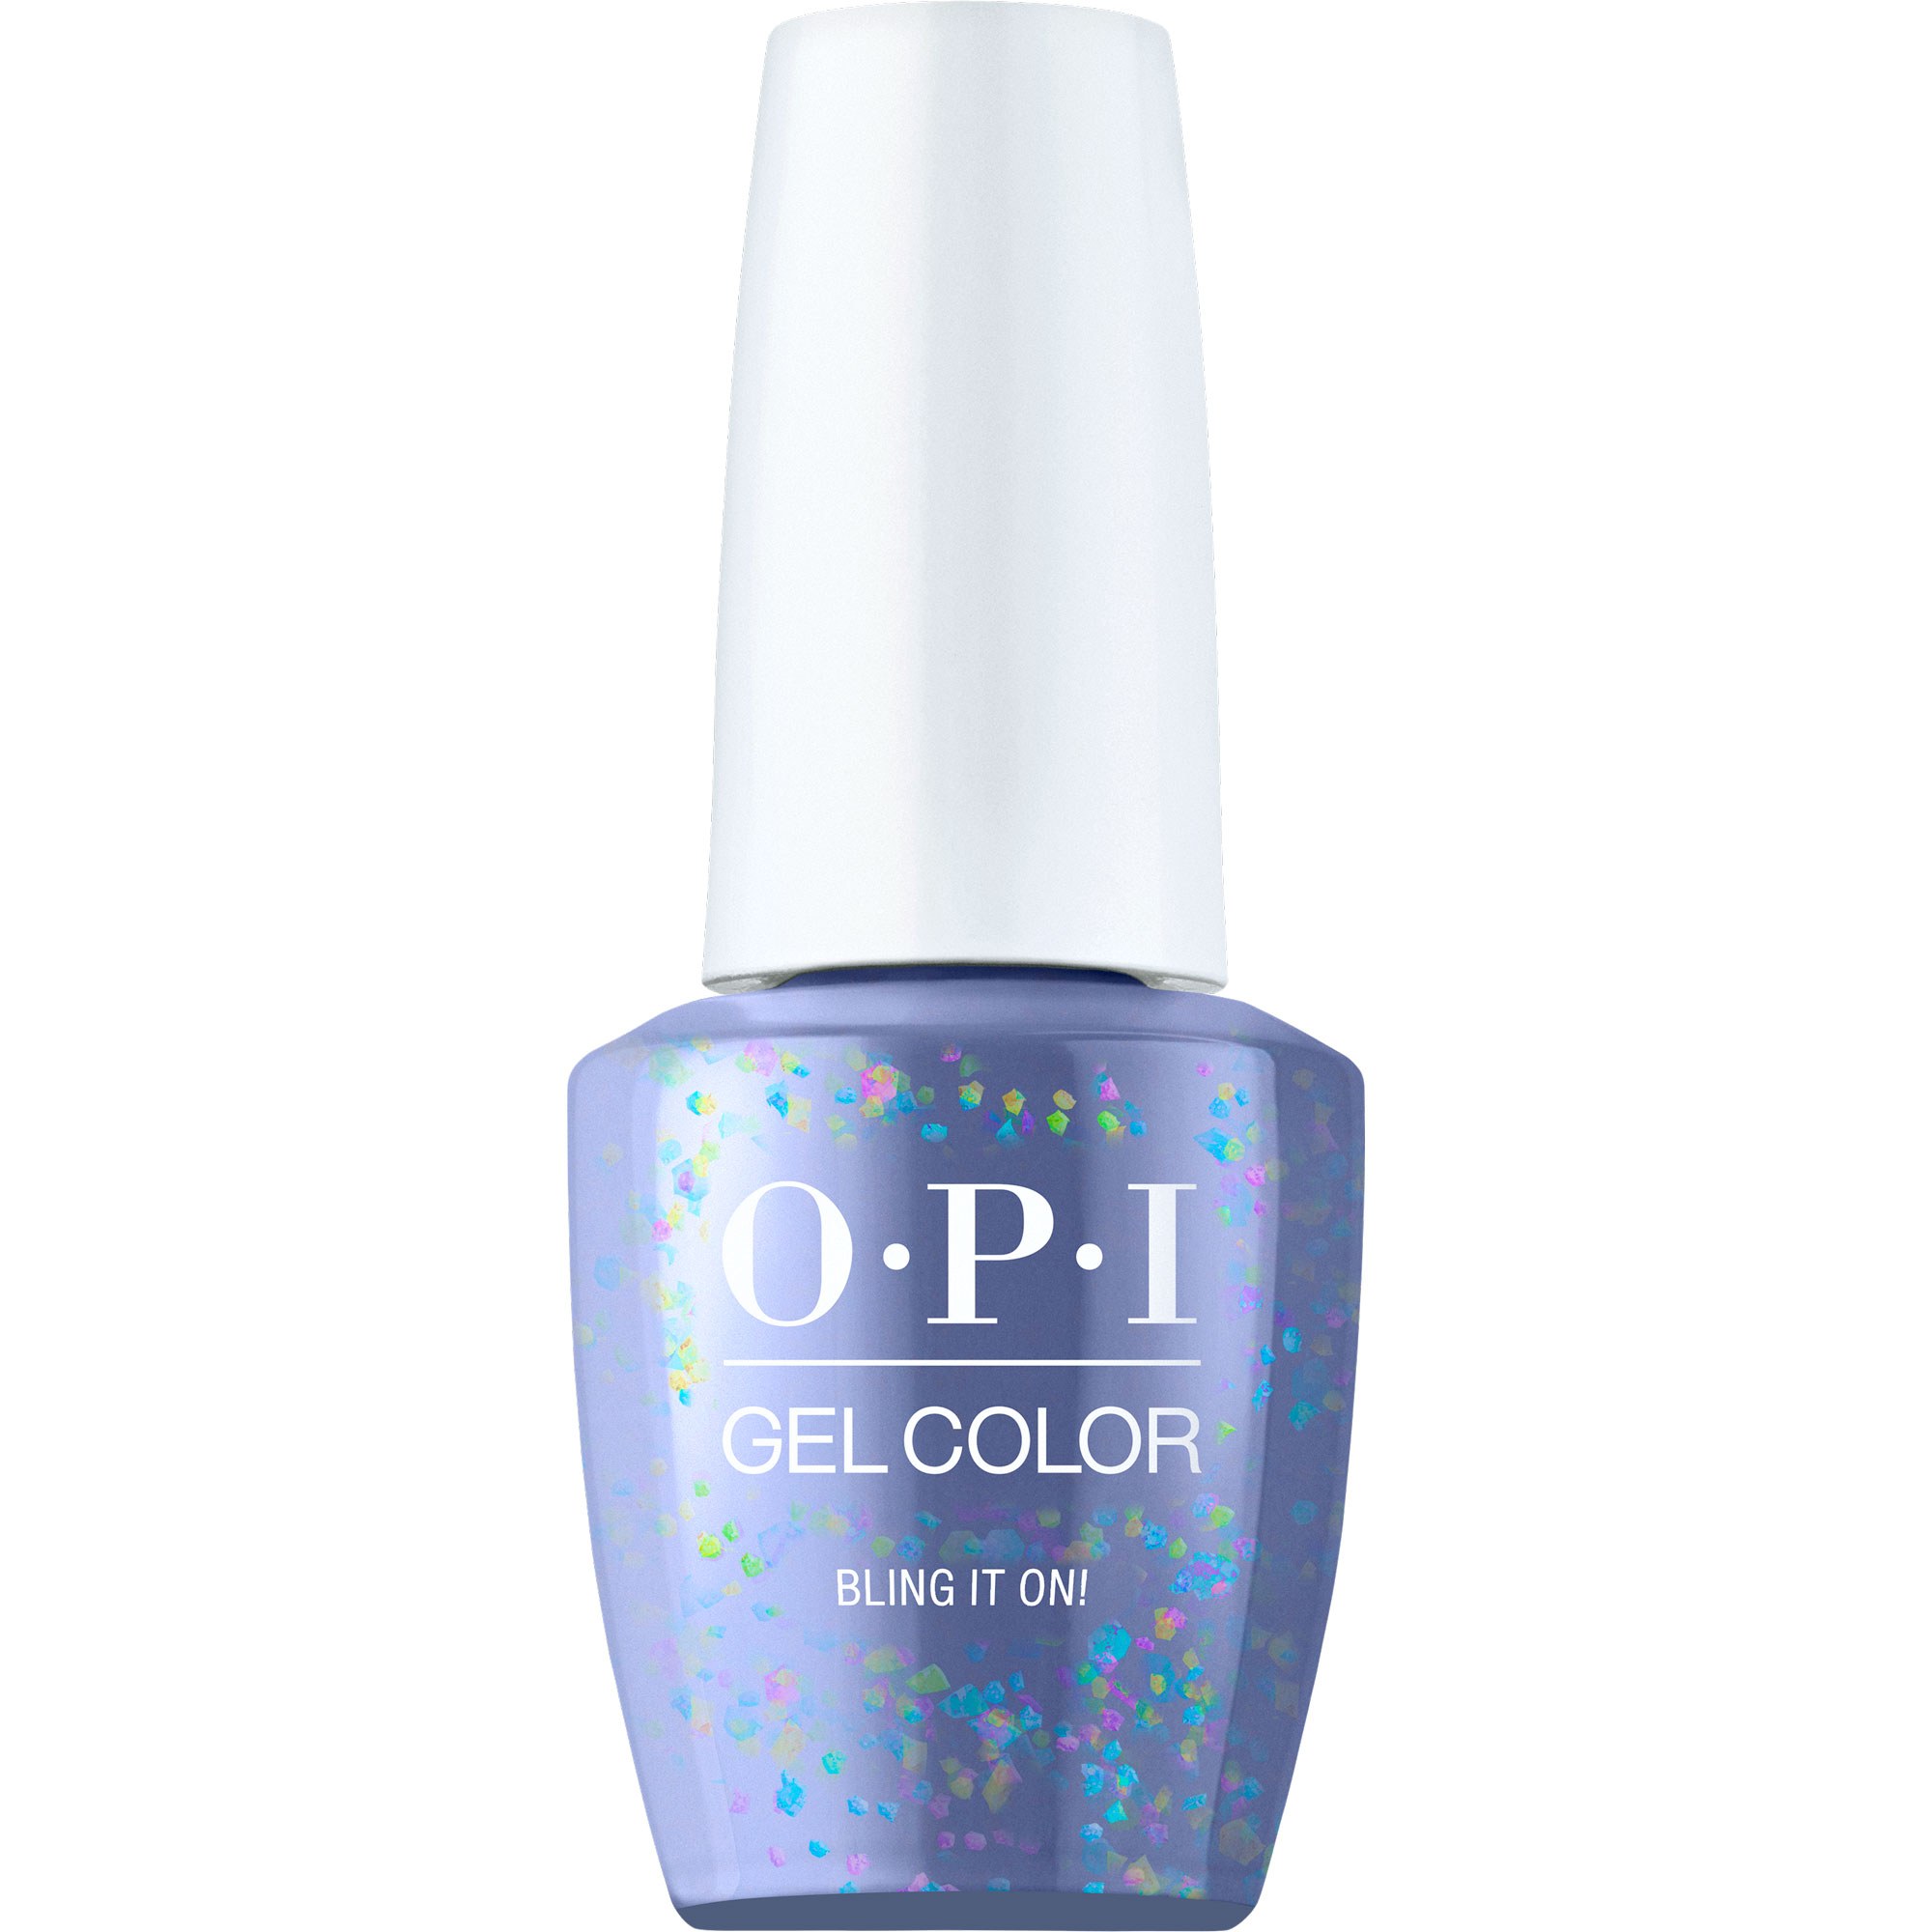 OPI Gel Color 360 - Bling It On!